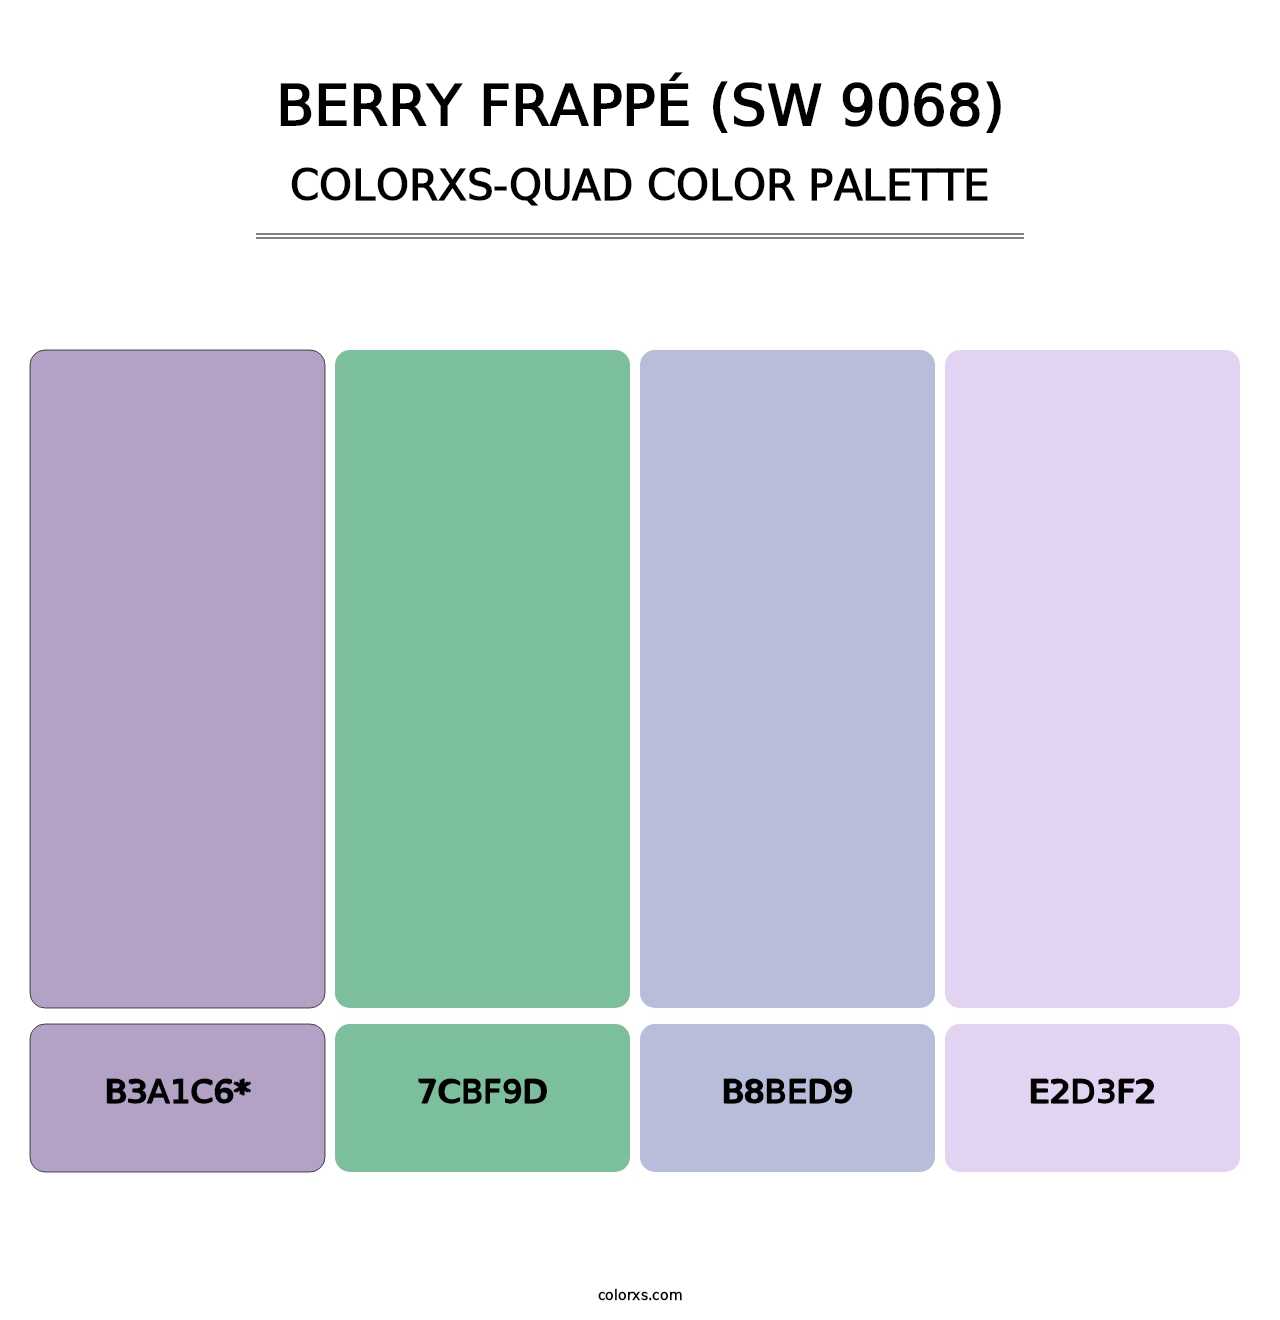 Berry Frappé (SW 9068) - Colorxs Quad Palette